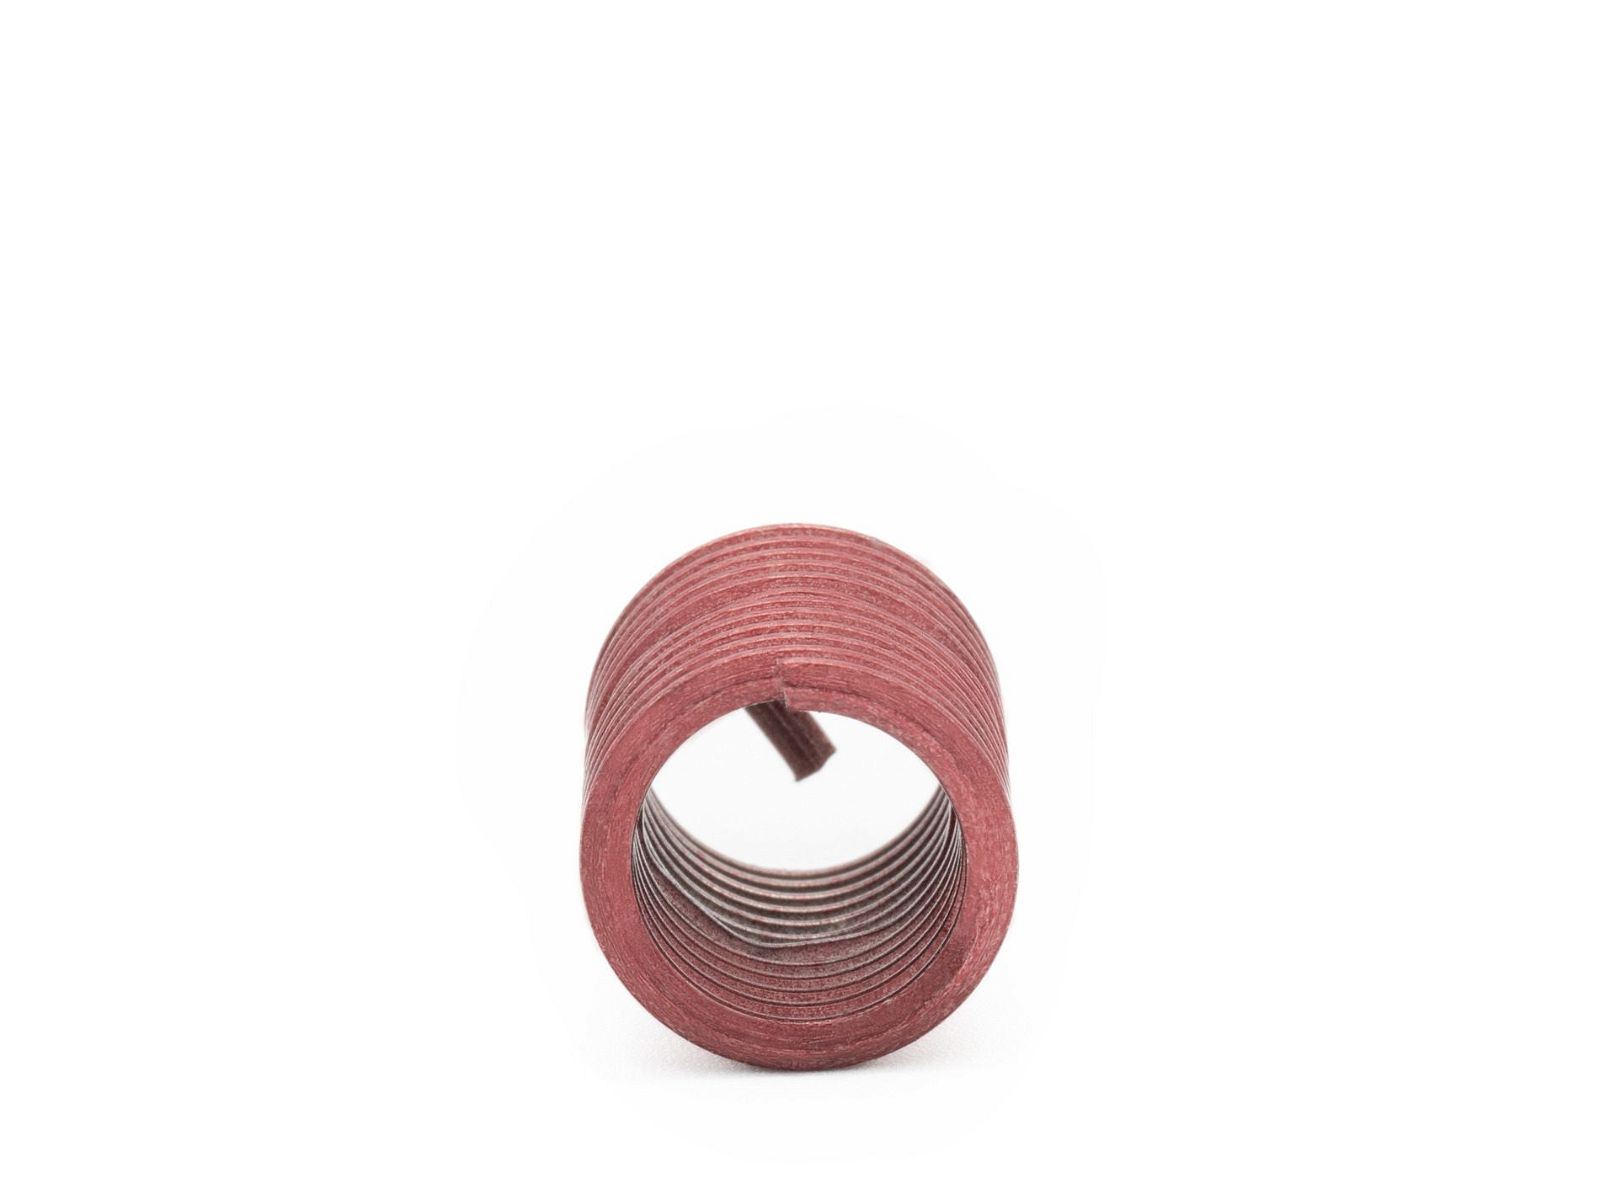 BaerCoil Drahtgewindeeinsätze UNC 1/2 x 13 - 2,0 D (25,4 mm) - screw grip (schraubensichernd) - 100 Stück